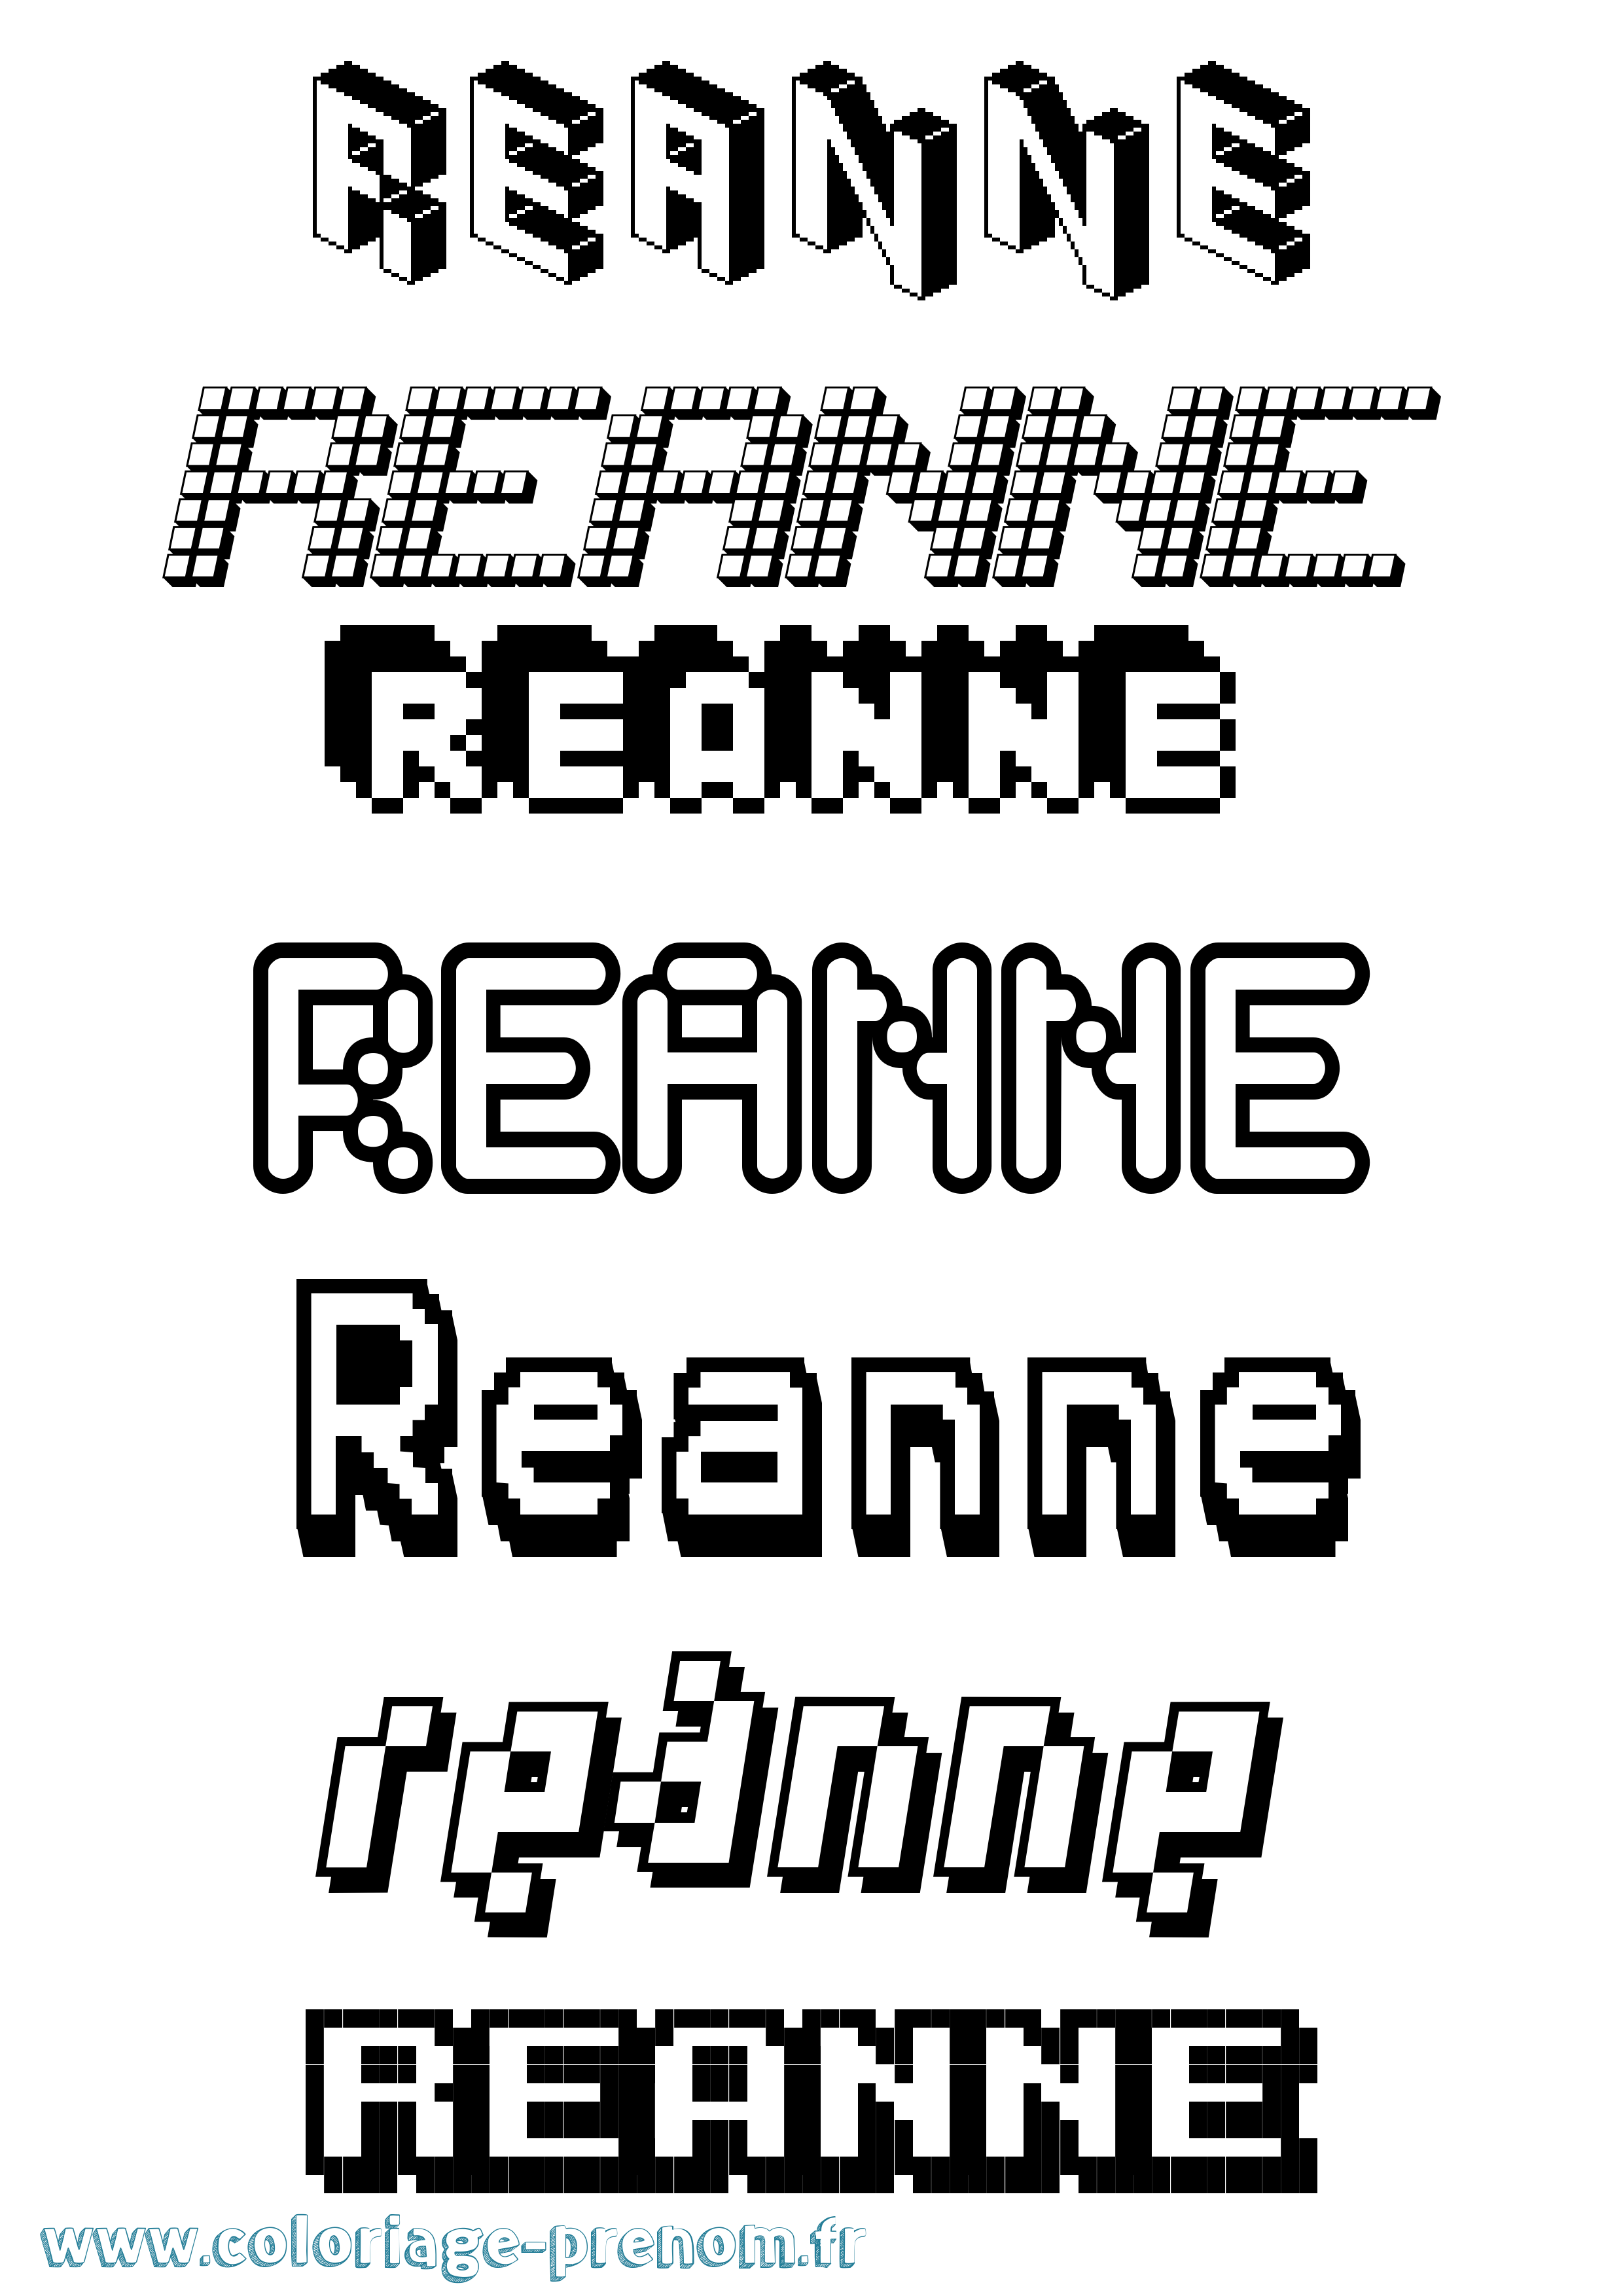 Coloriage prénom Reanne Pixel